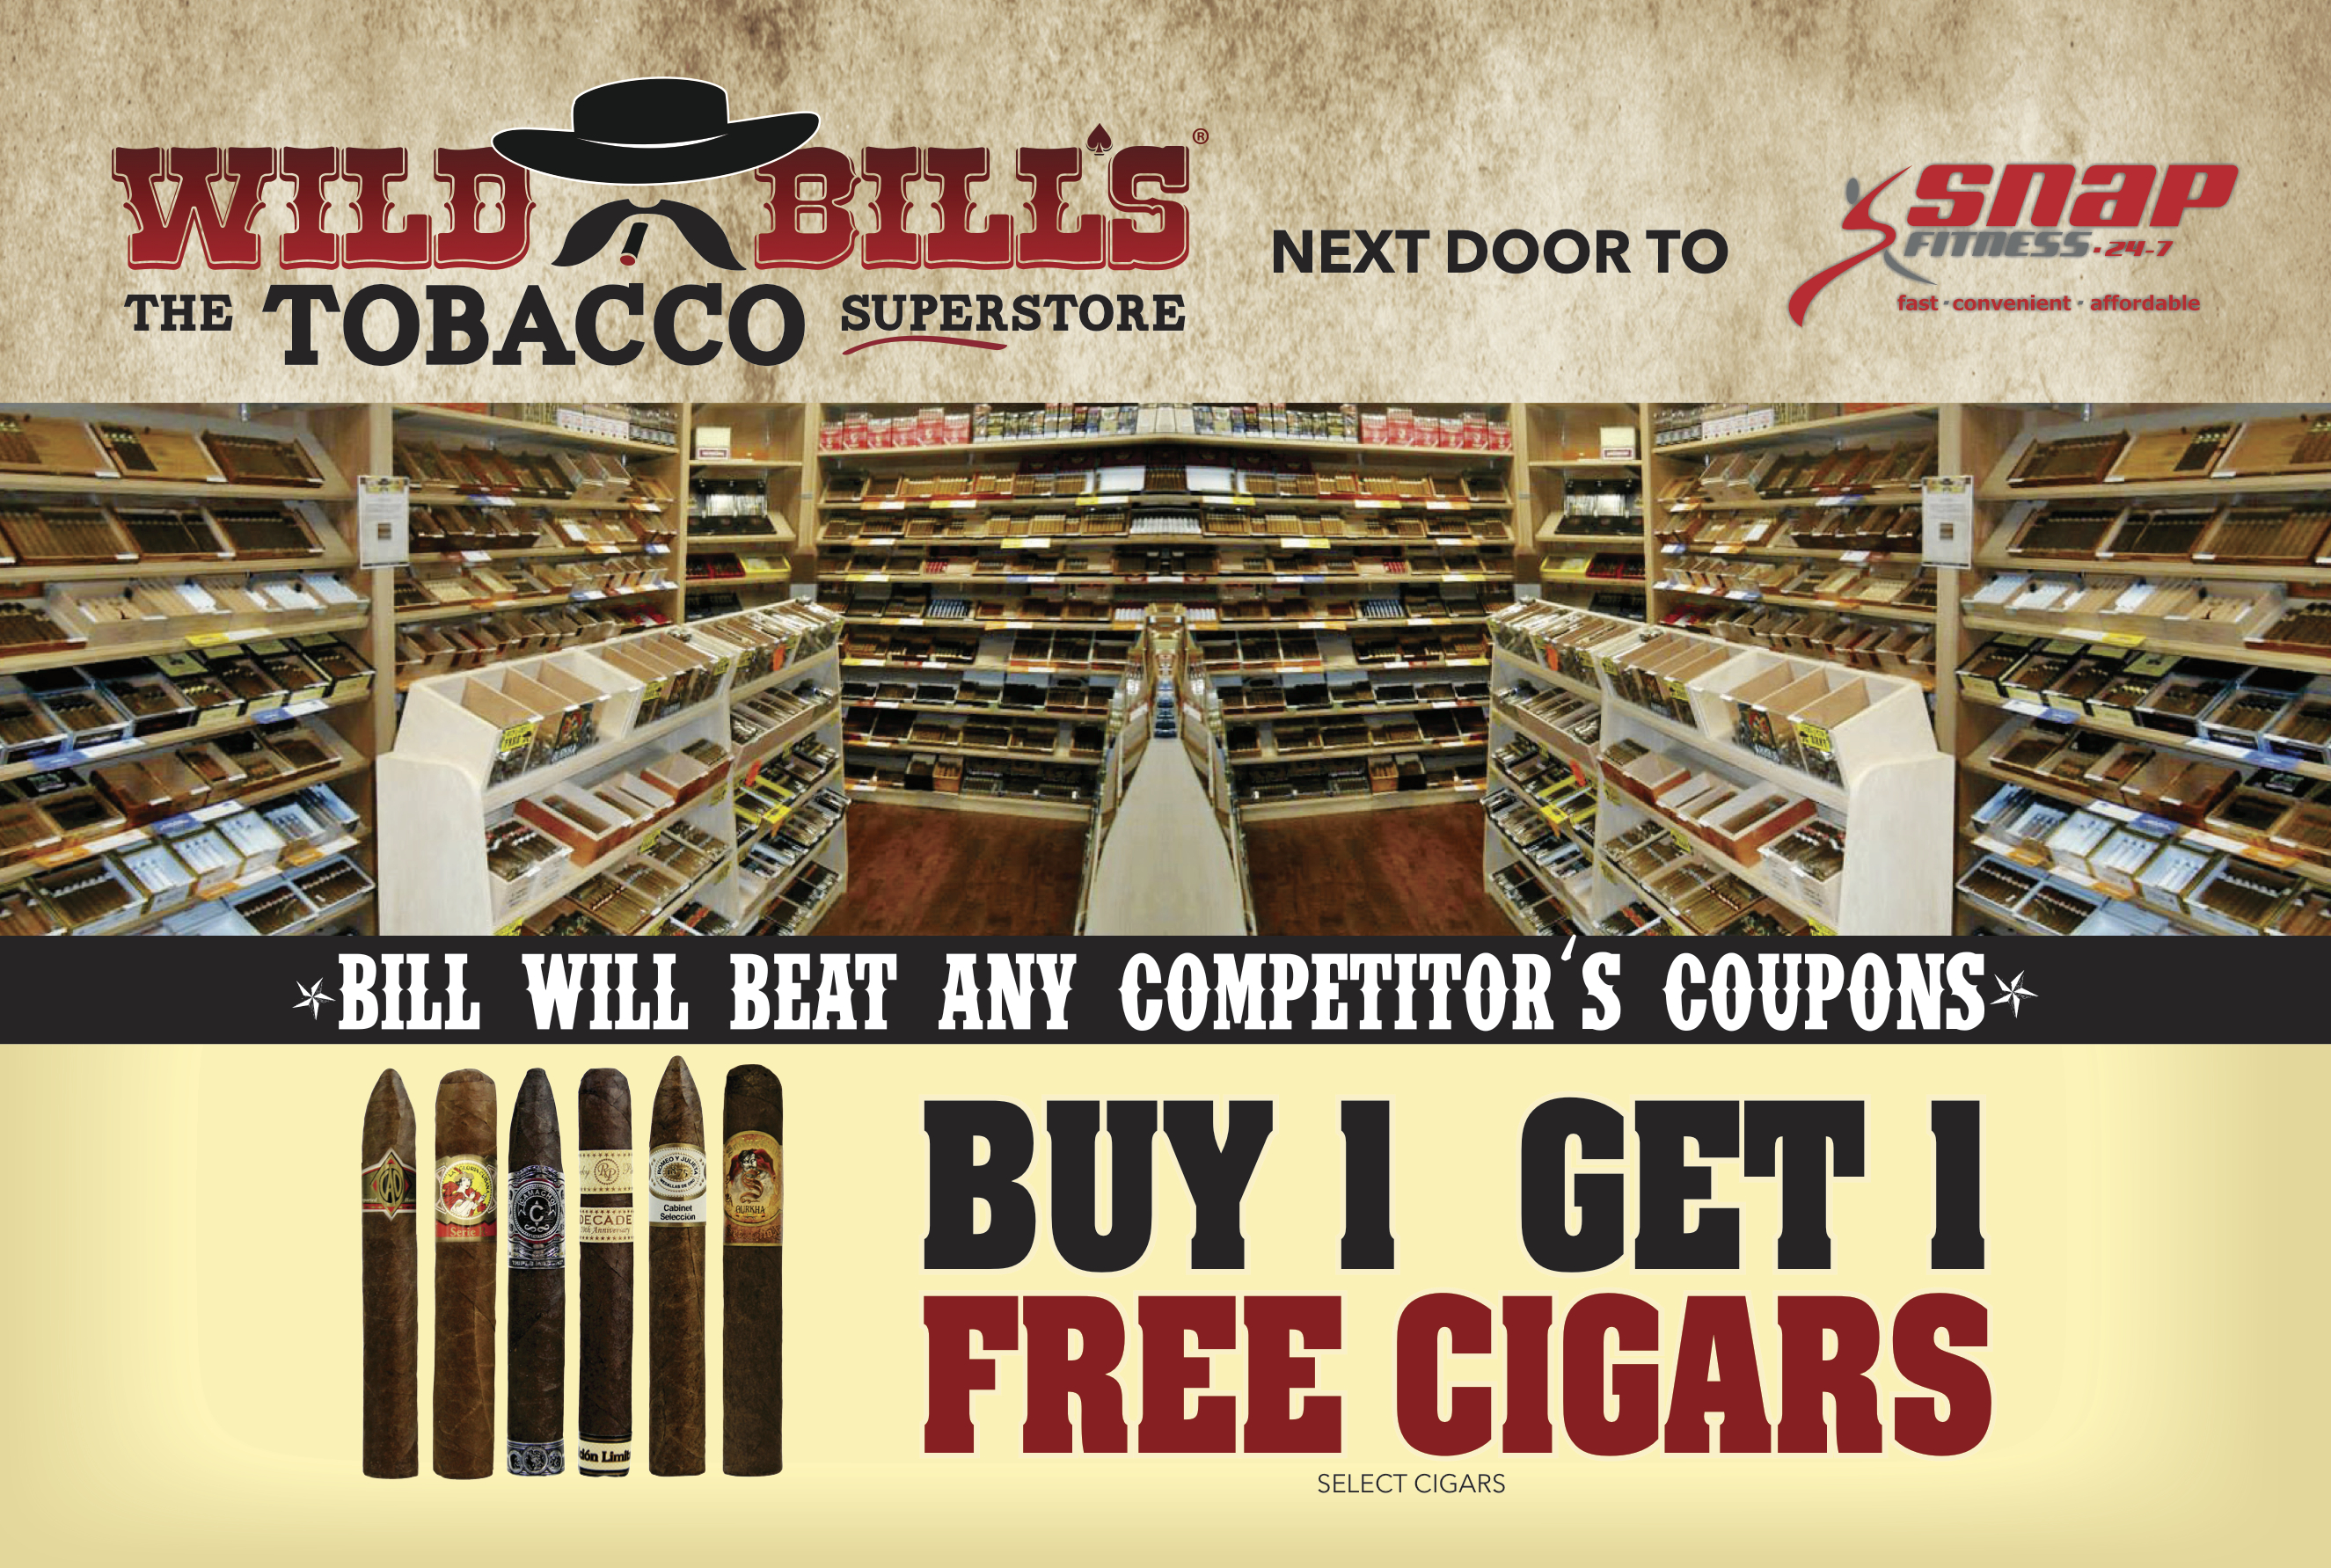 wild bills tobacco, harrison township